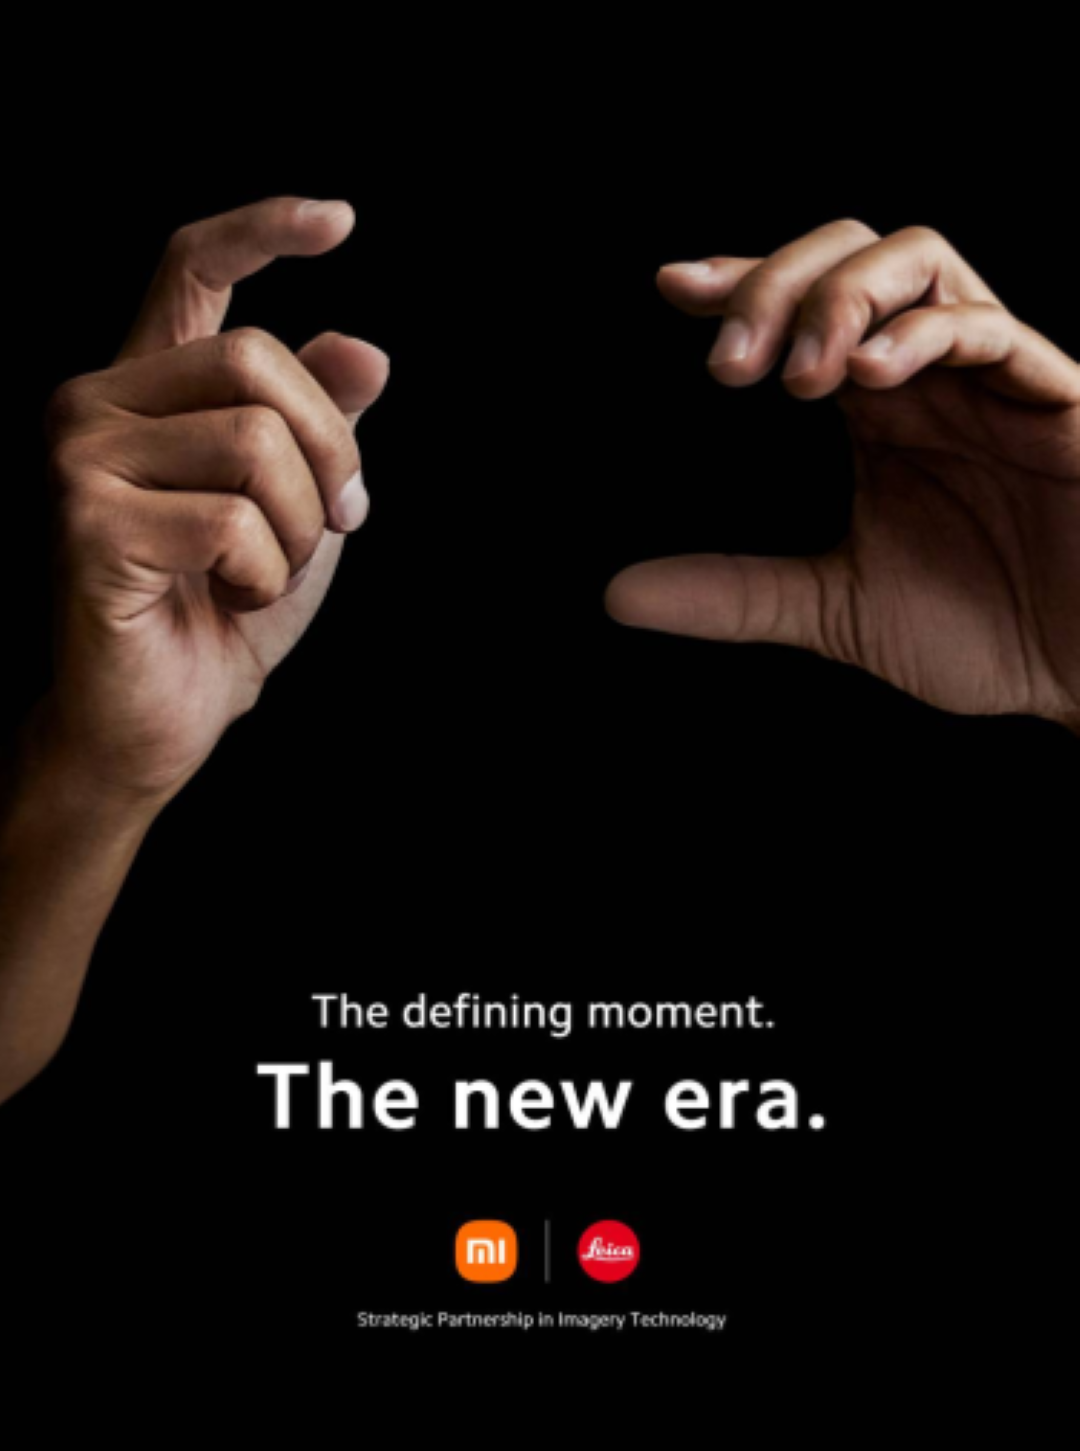 Xiaomi dan Leica Umumkan Kerja Sama Strategis Jangka Panjang Untuk Ciptakan Era Baru Mobile Imaging 1